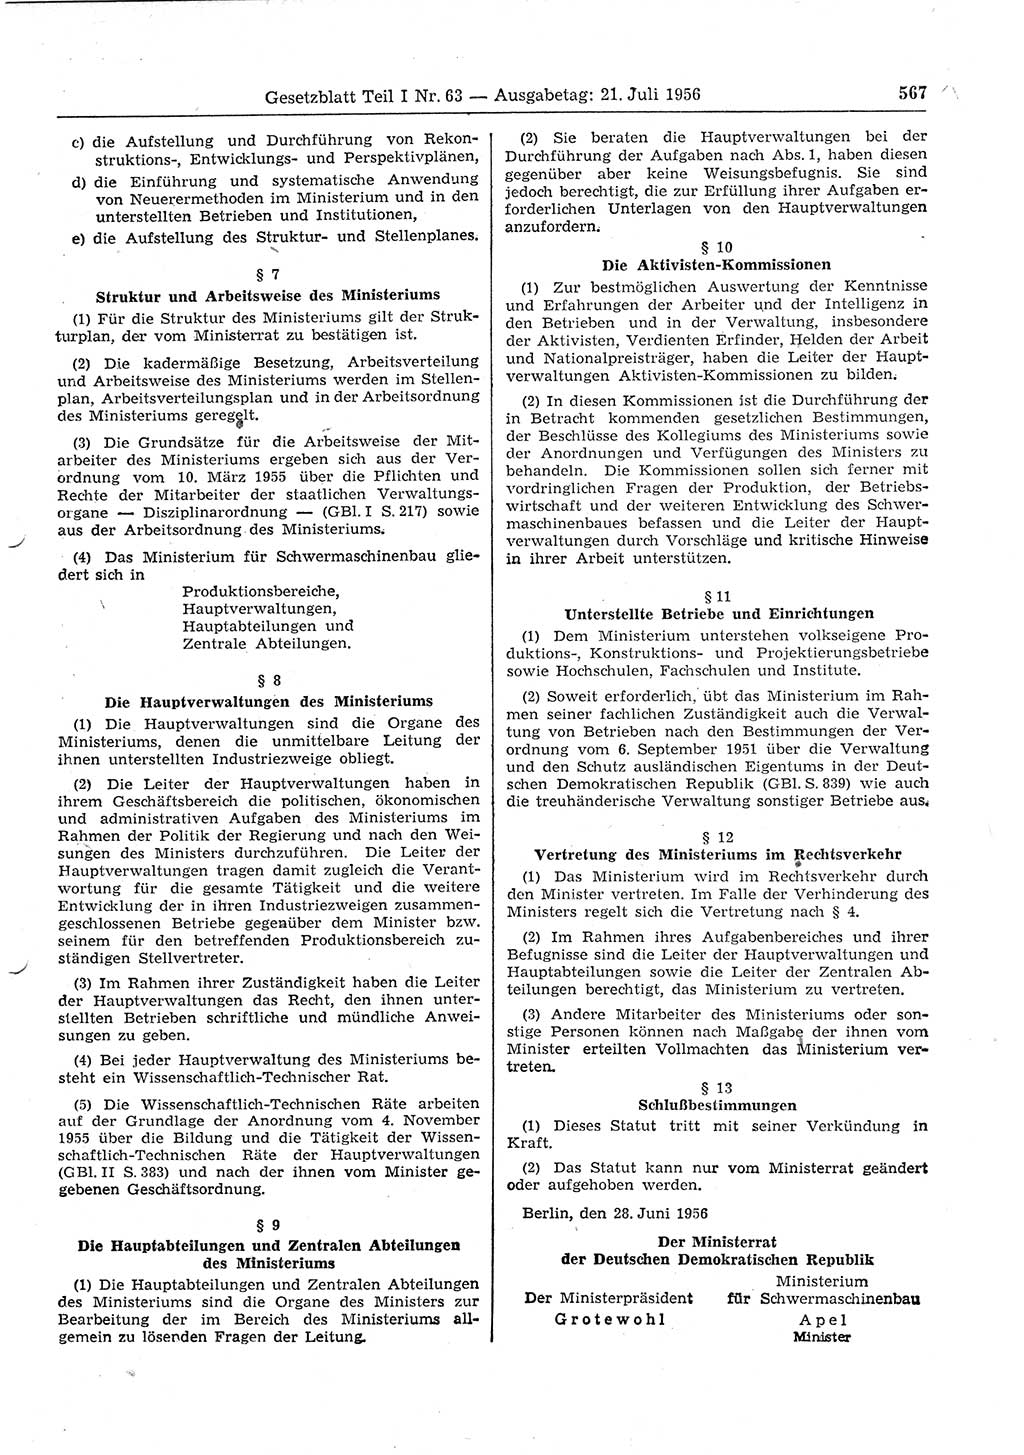 Gesetzblatt (GBl.) der Deutschen Demokratischen Republik (DDR) Teil Ⅰ 1956, Seite 567 (GBl. DDR Ⅰ 1956, S. 567)